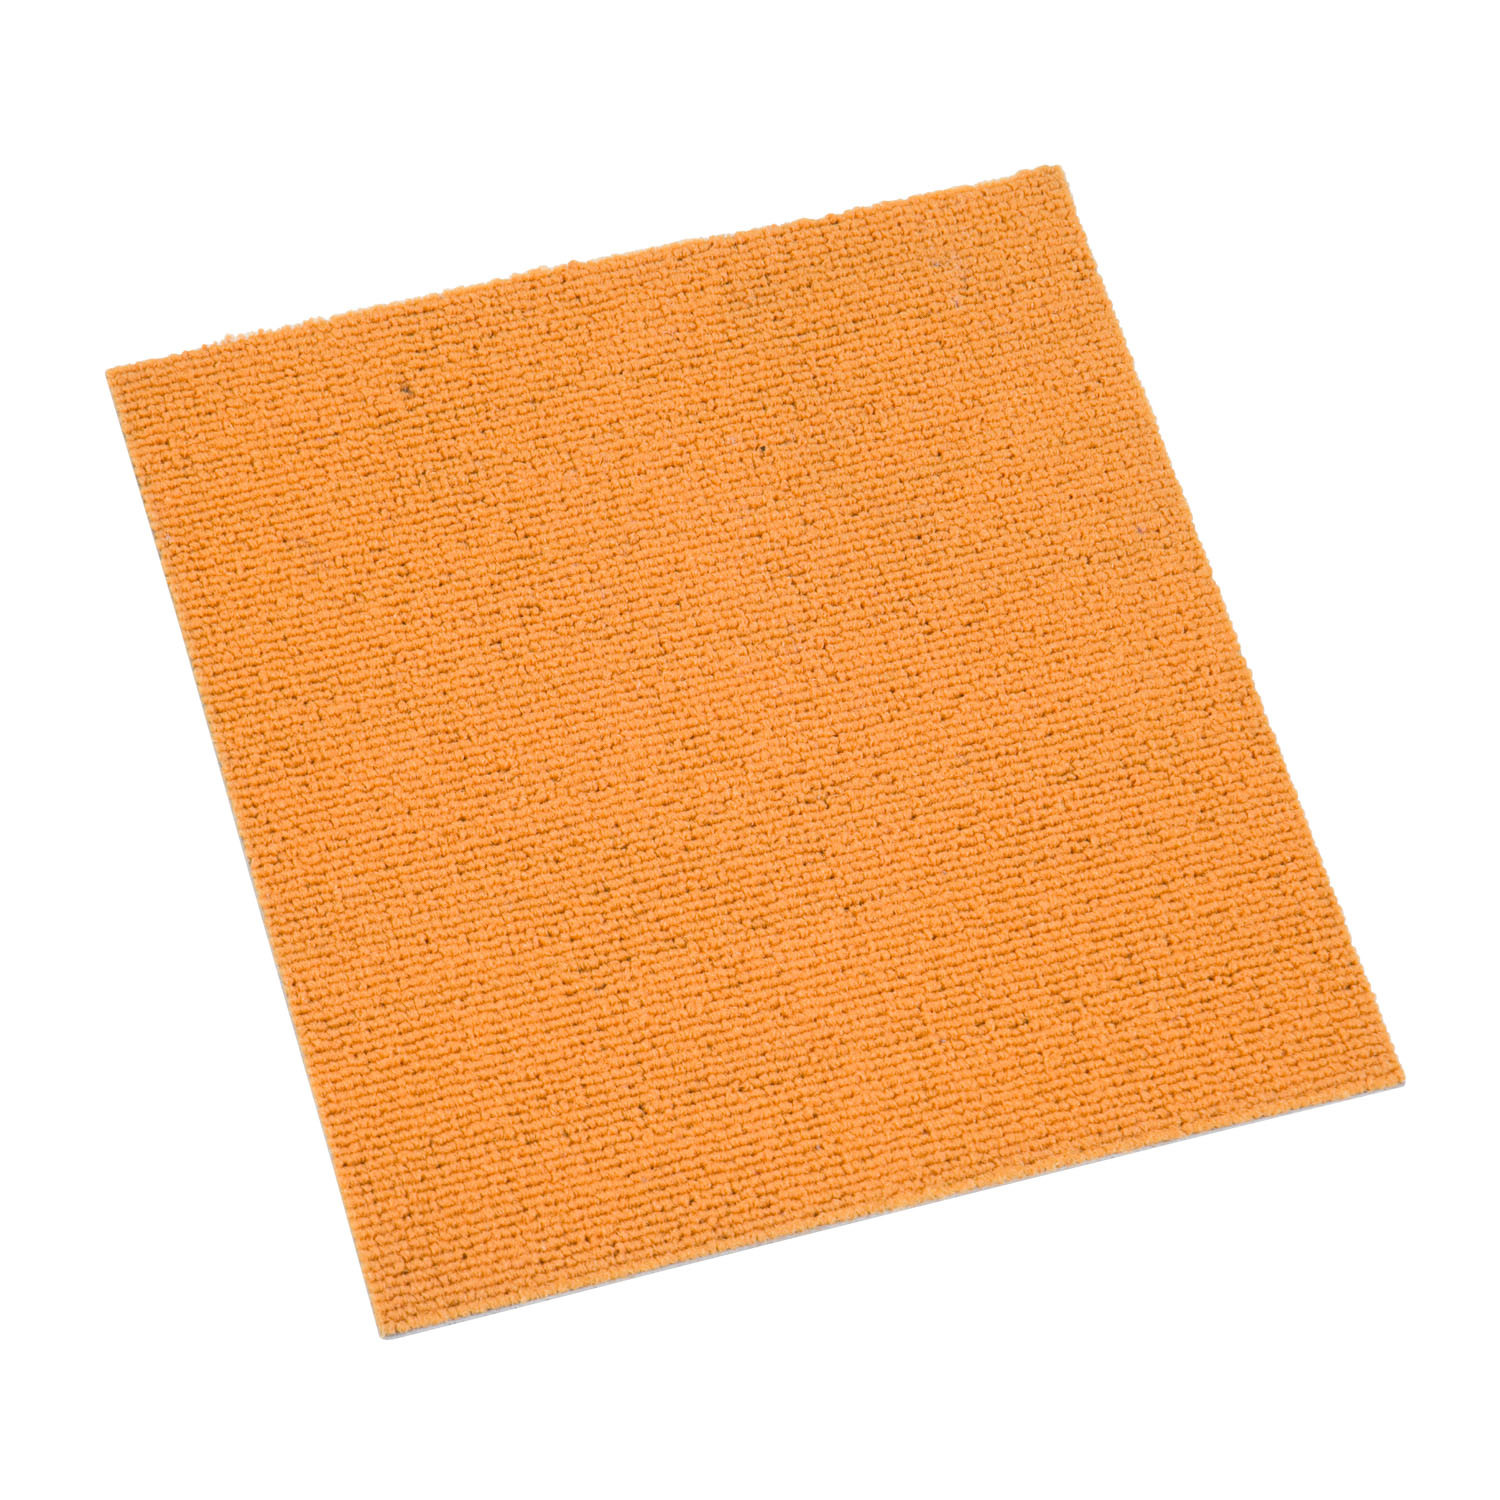 Vinyl Commercial Carpet Tiles For Basement